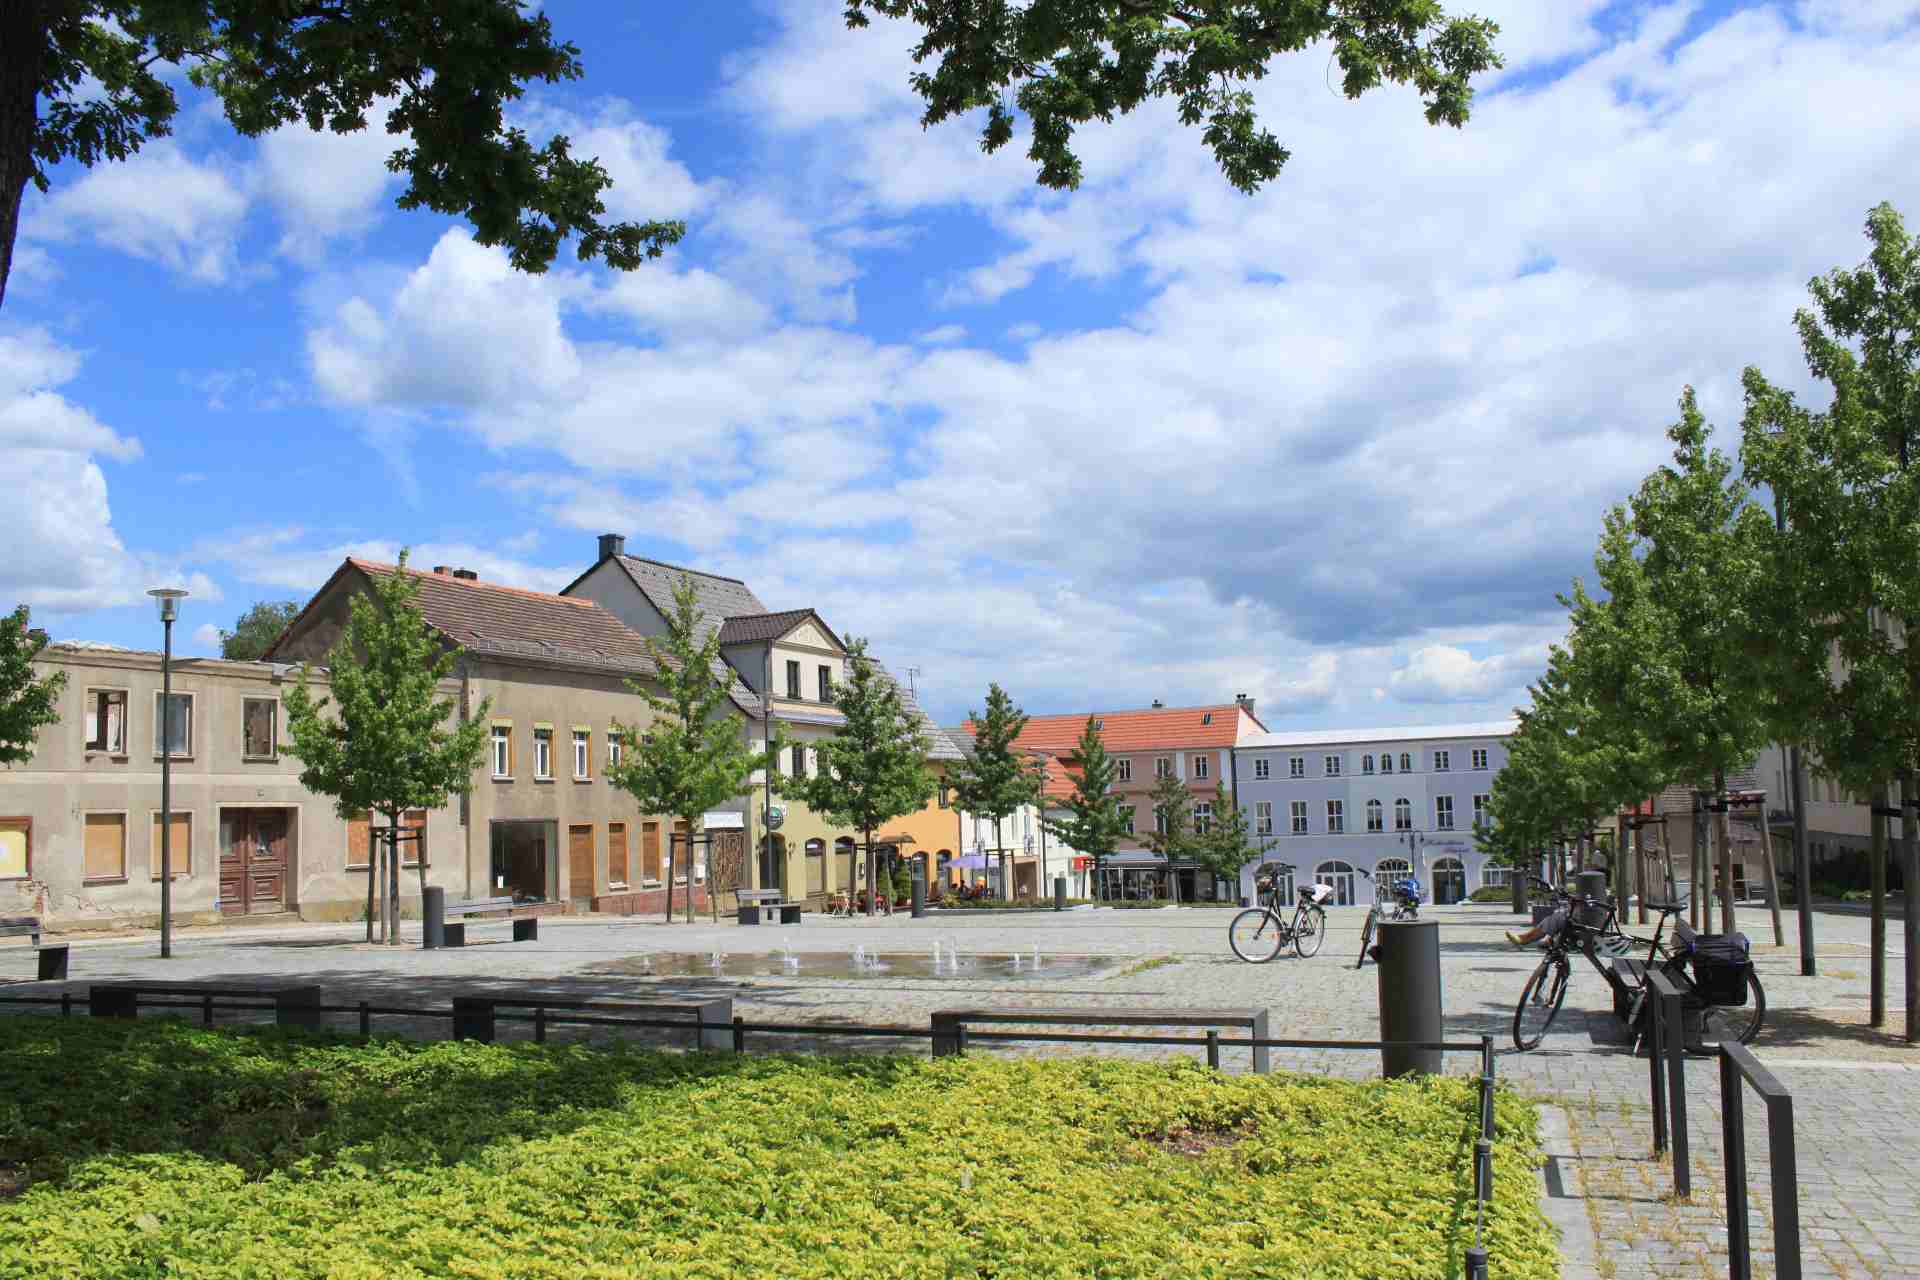 Marktplatz in Strausberg